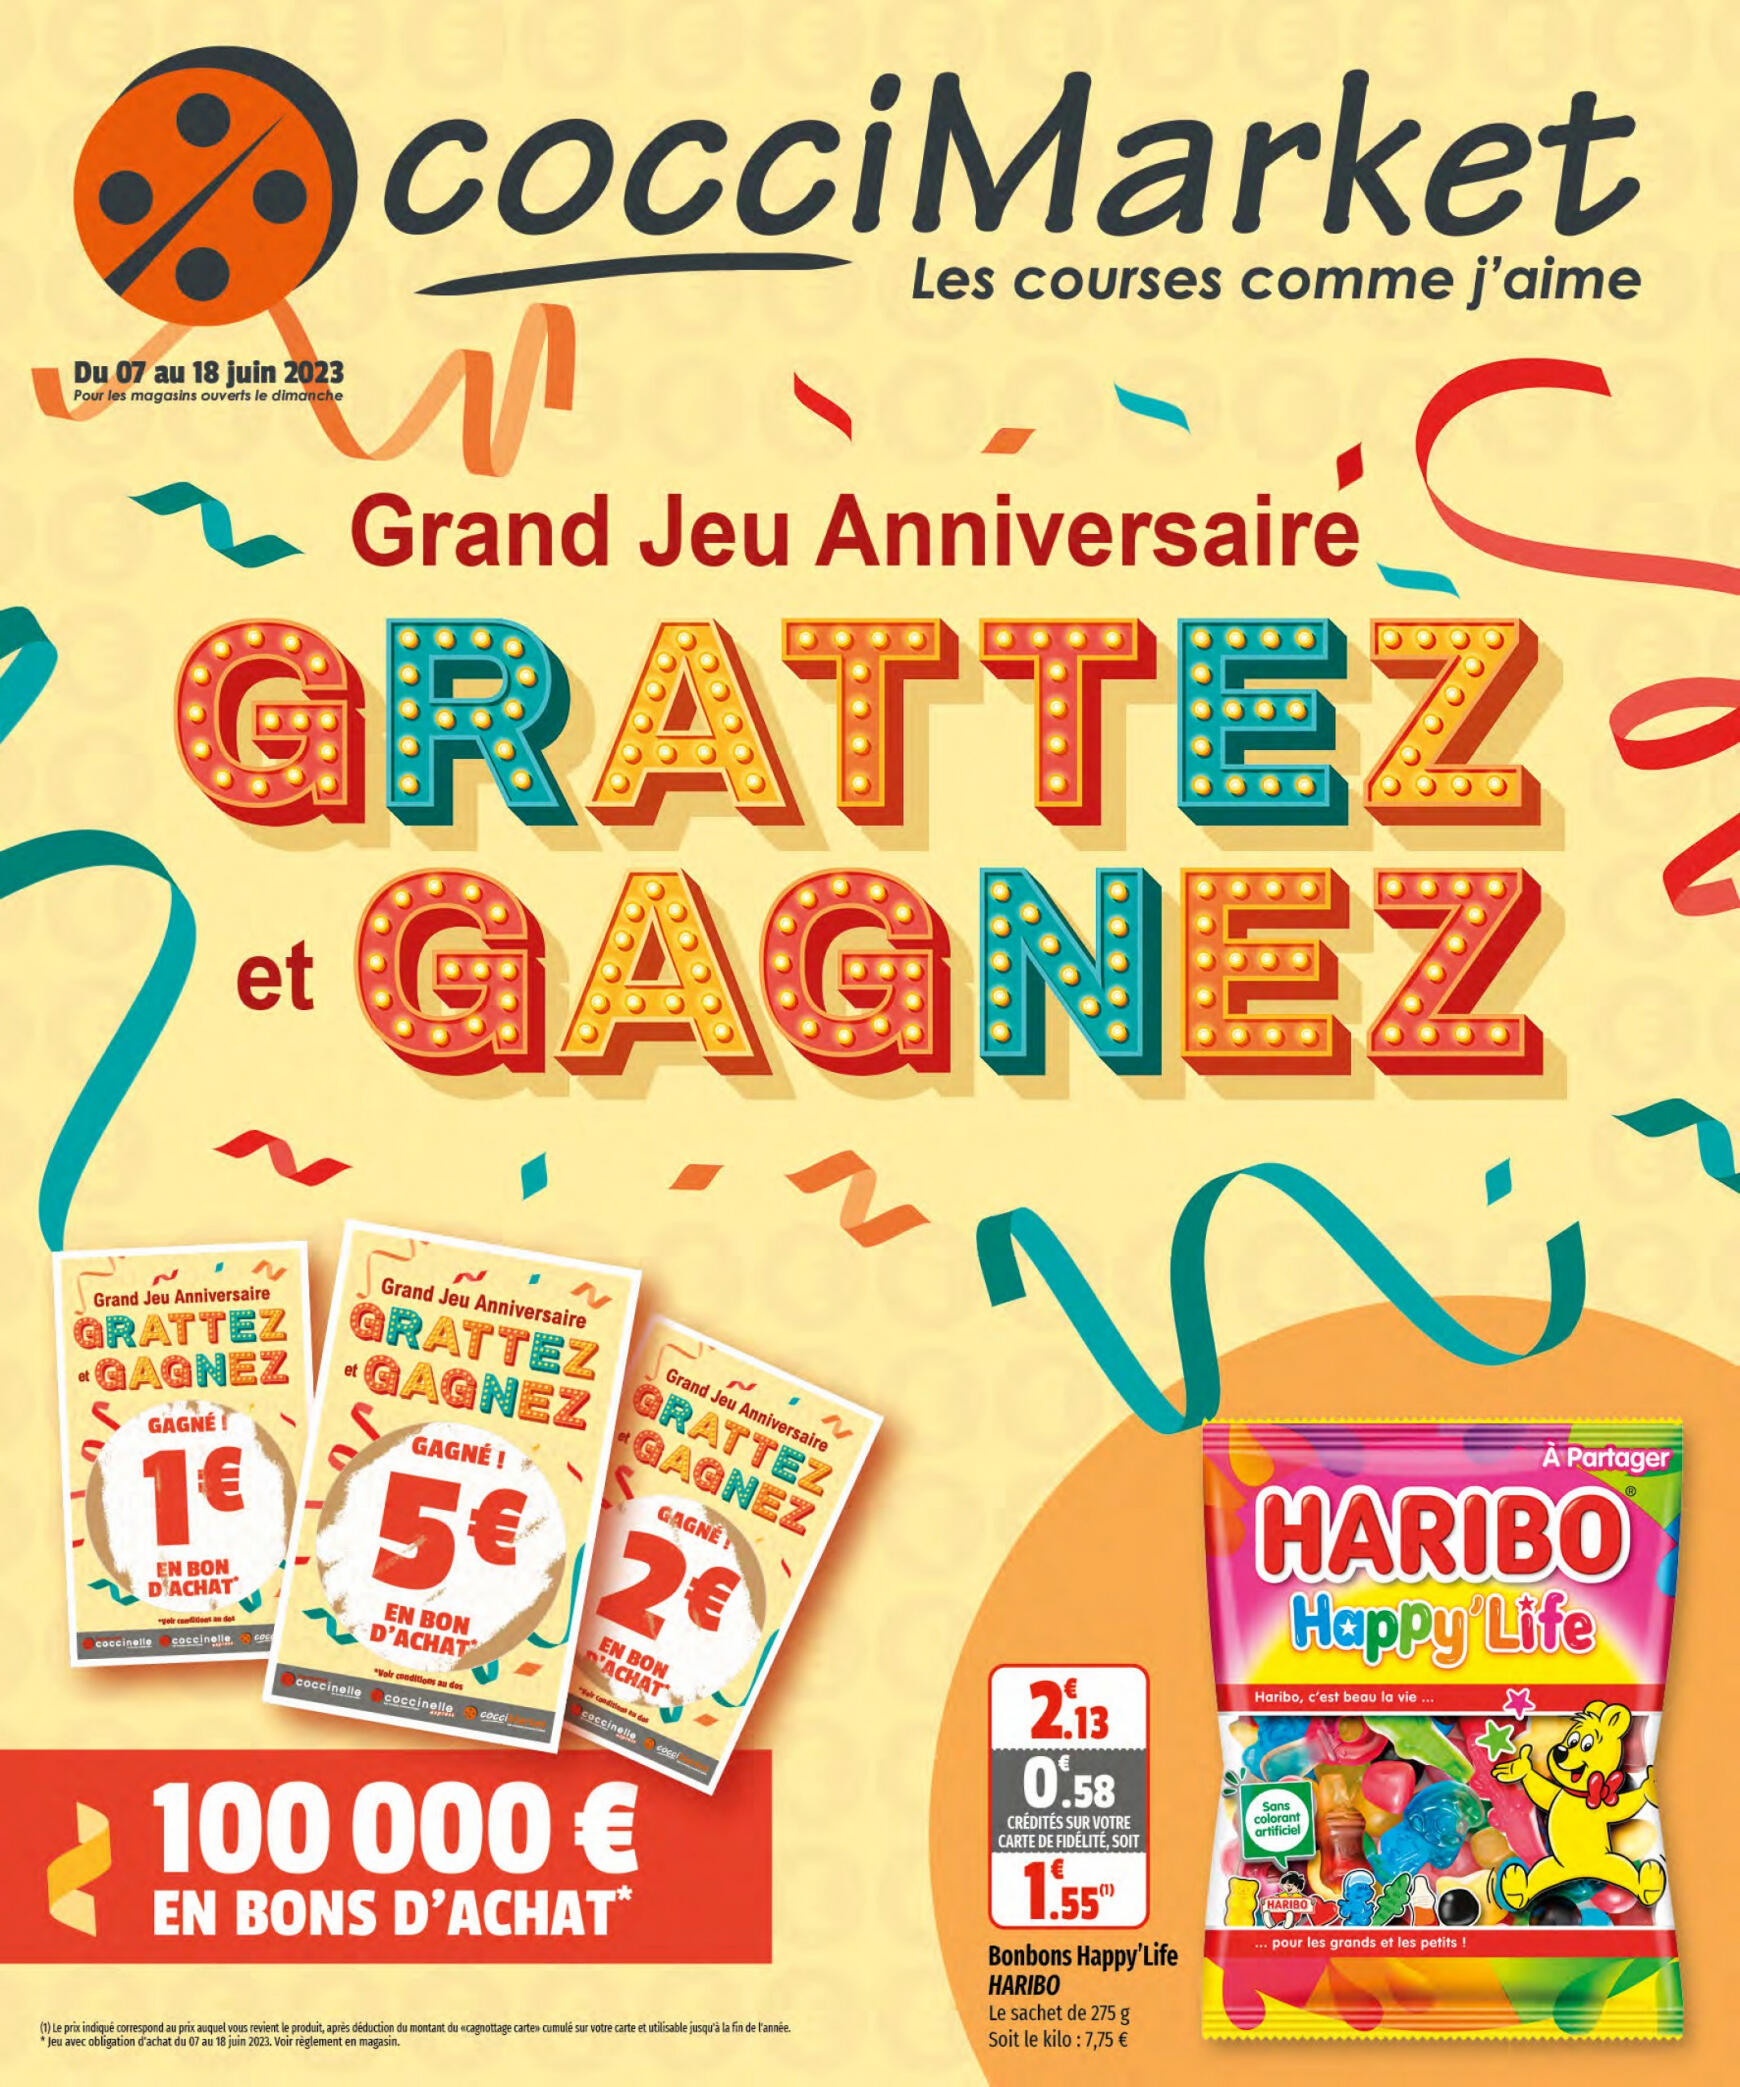 cocci-market - CocciMarket